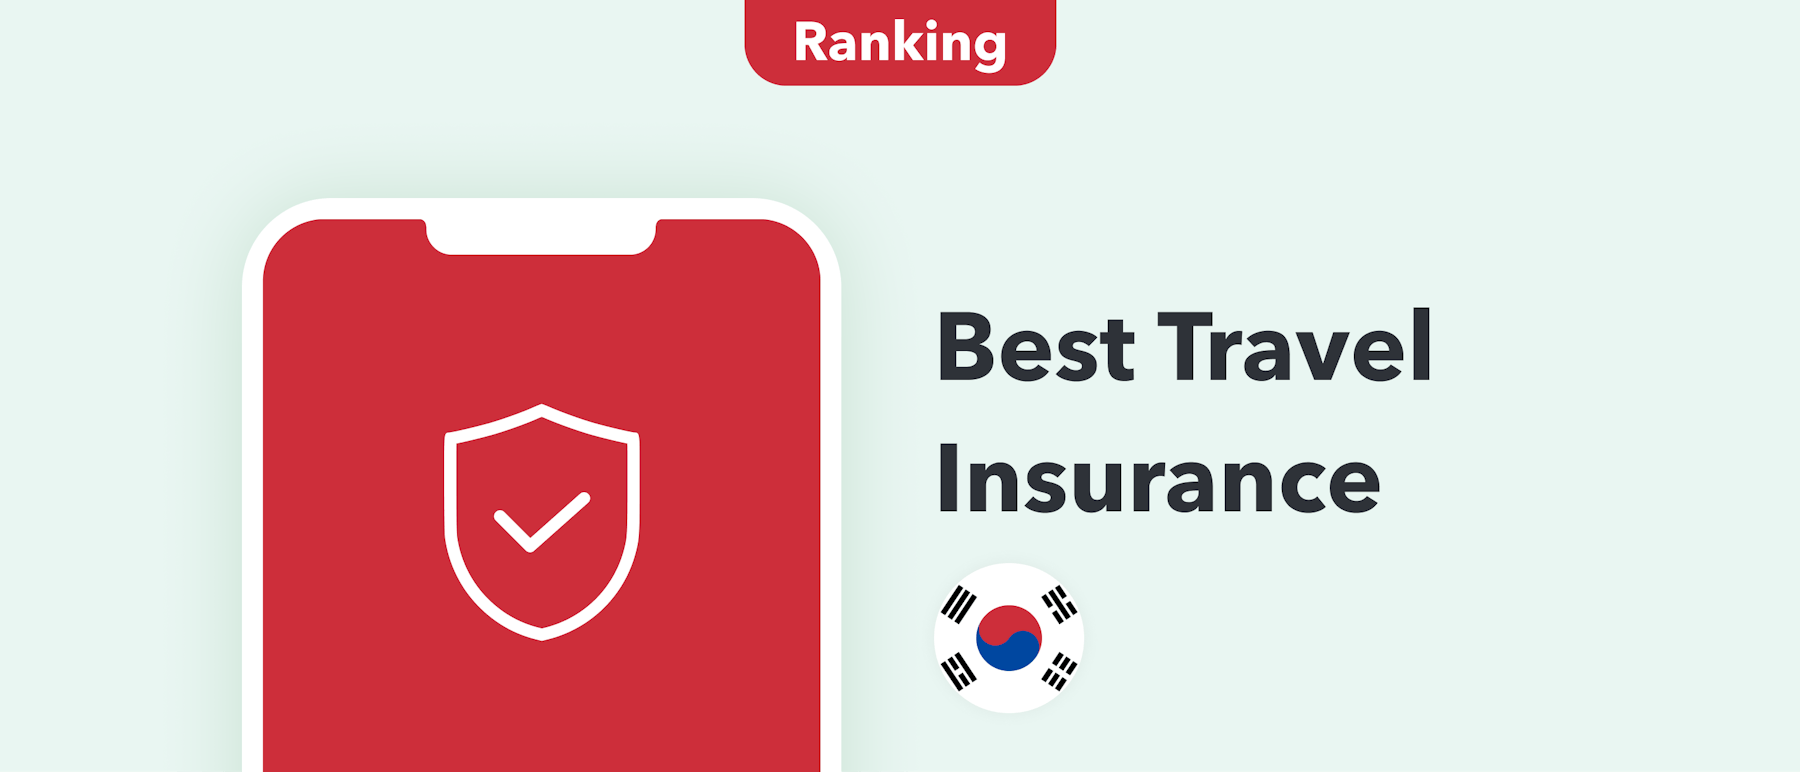 korea travel insurance reddit